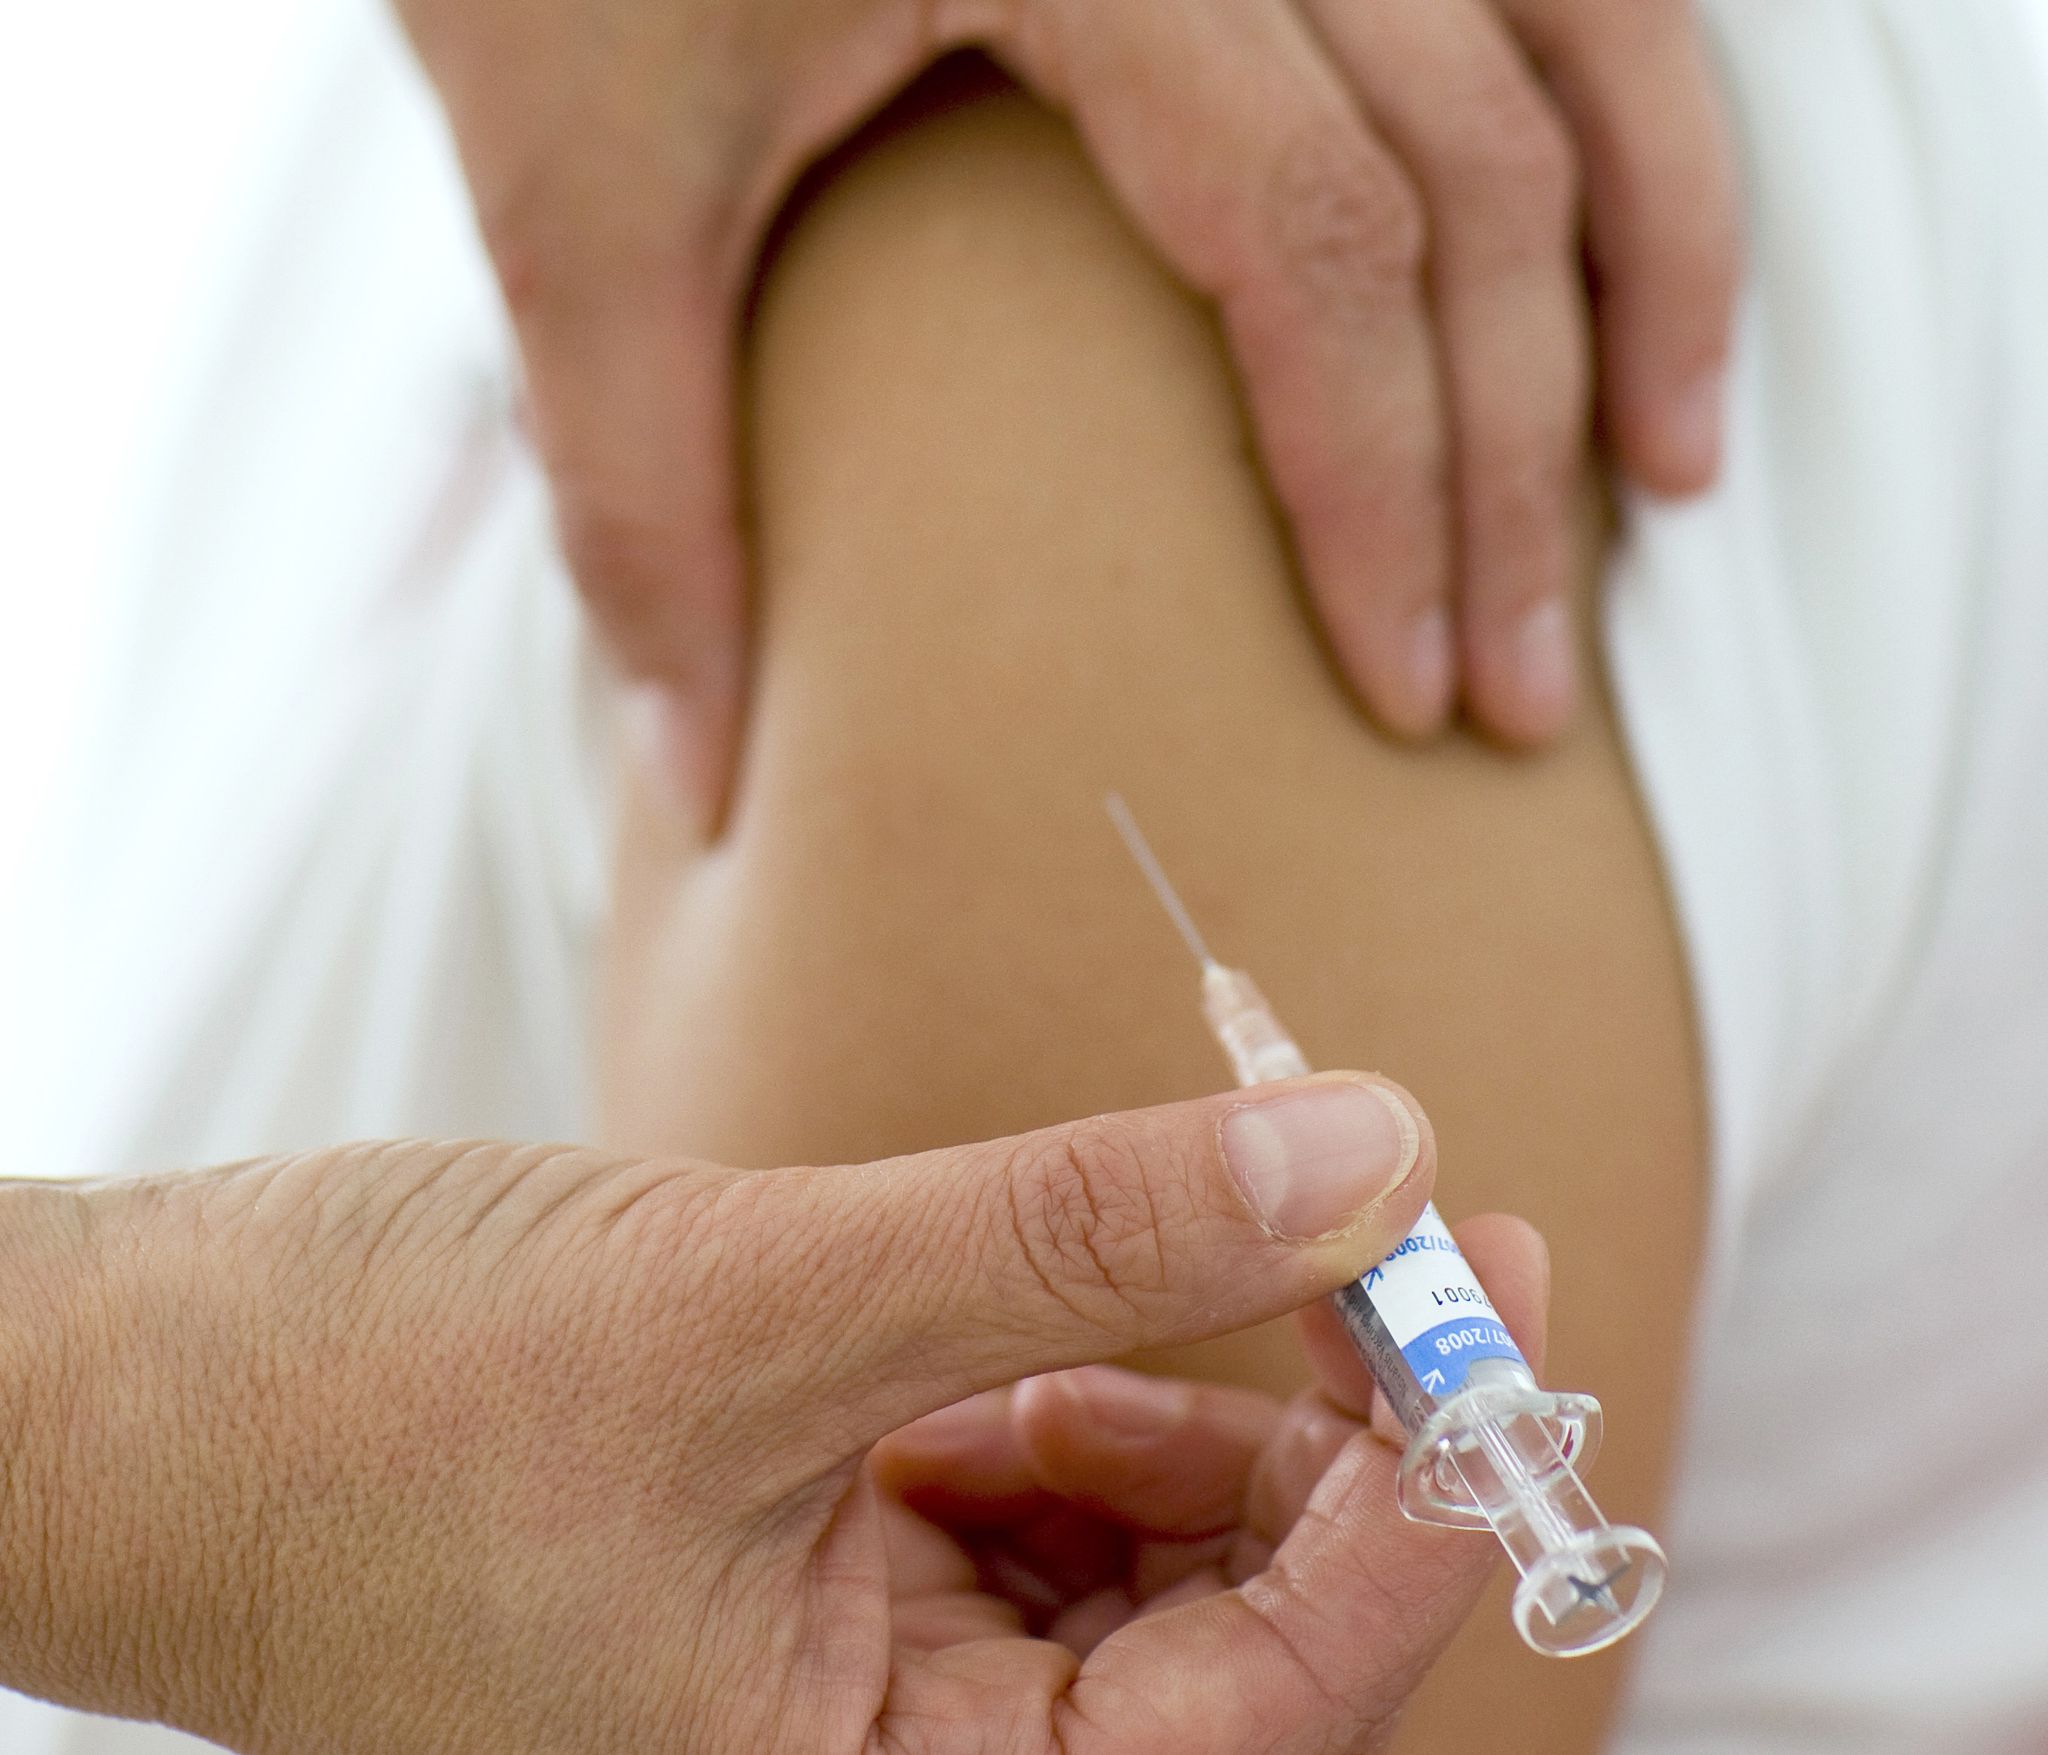 Eine Impfung gegen krebsauslösende Humane Papillomviren (HPV) wird verabreicht.